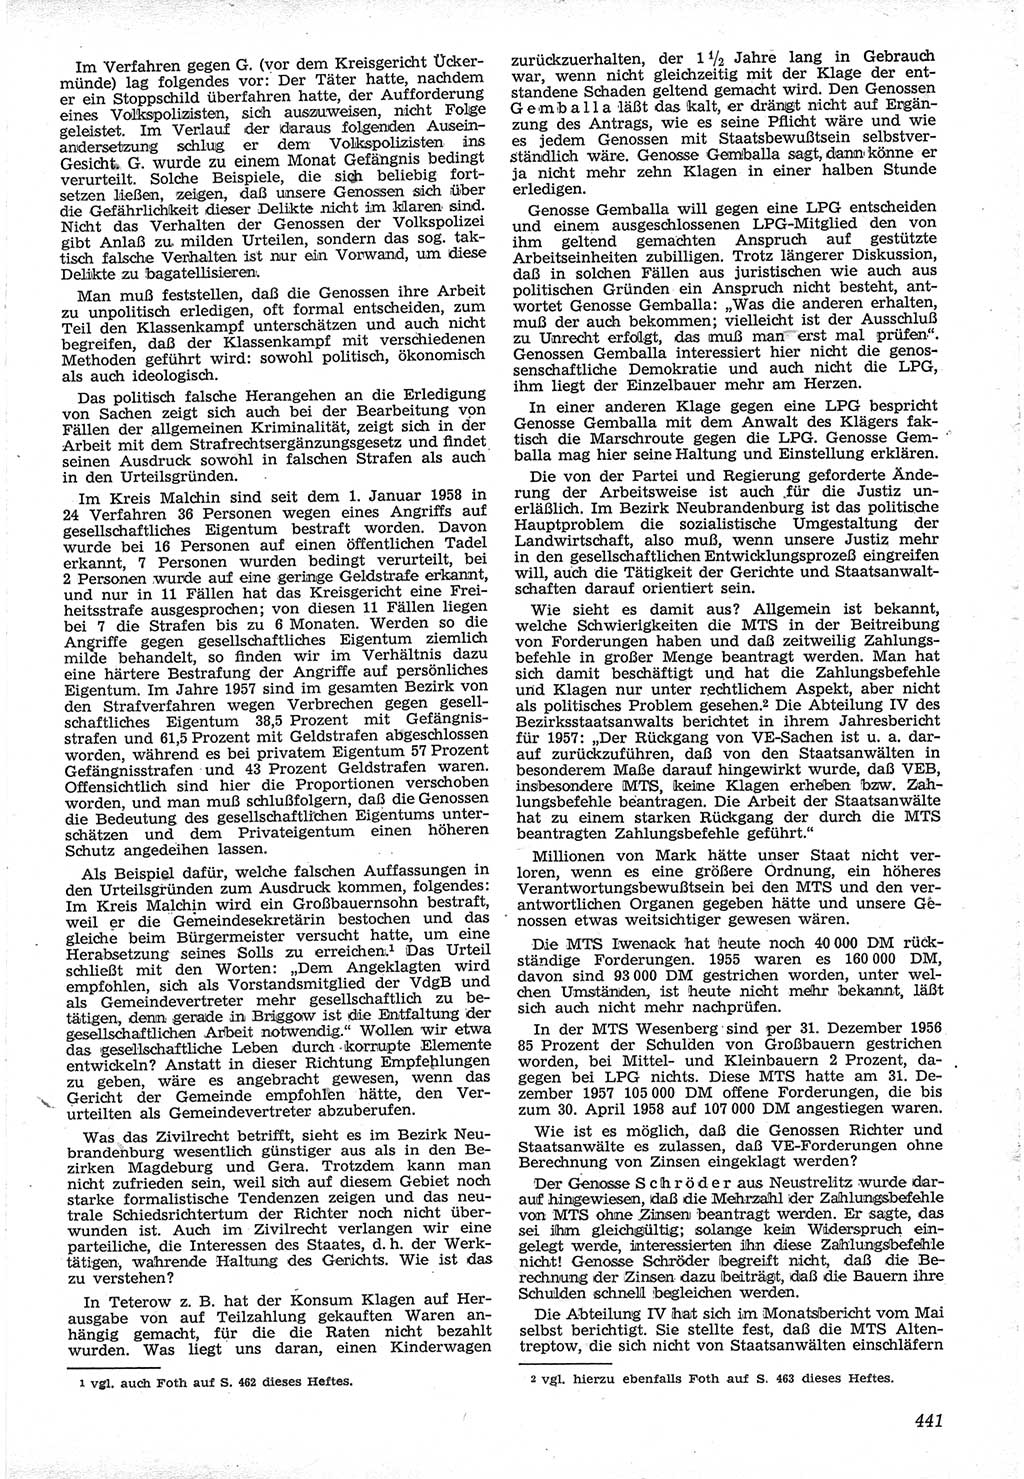 Neue Justiz (NJ), Zeitschrift für Recht und Rechtswissenschaft [Deutsche Demokratische Republik (DDR)], 12. Jahrgang 1958, Seite 441 (NJ DDR 1958, S. 441)